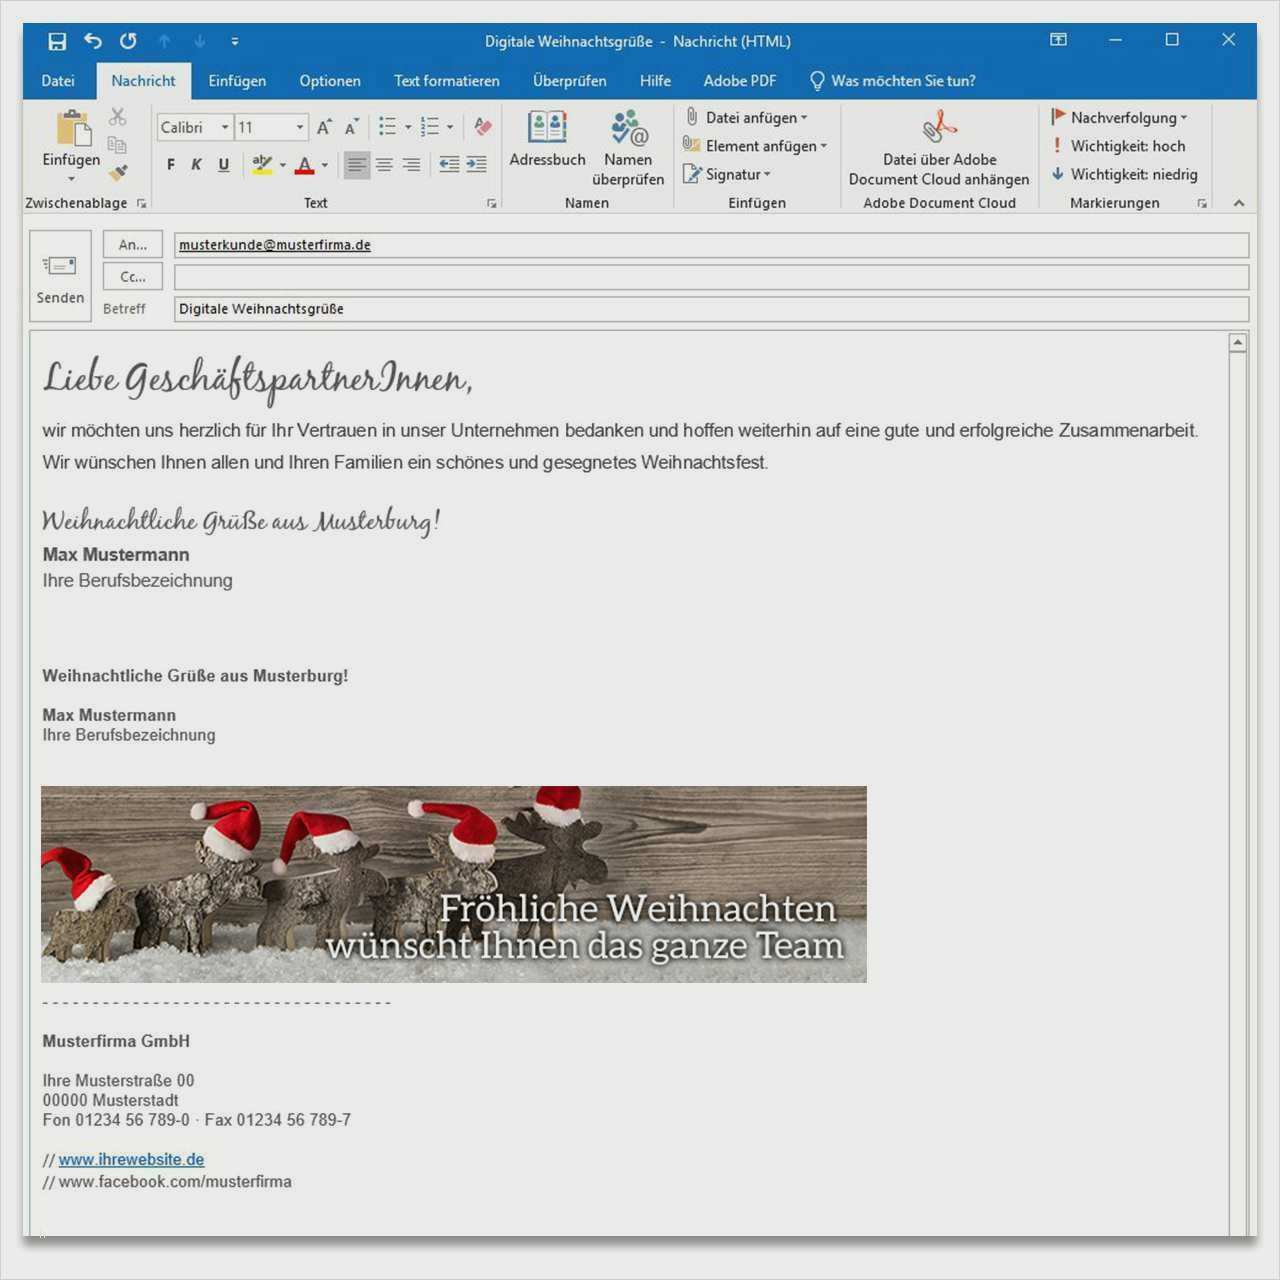 Angenehm E Mail Signatur Vorlage Geschaftlich Diese Konnen Anpassen In Microsoft Word Lebenslauf Layout Microsoft Word Vorlagen